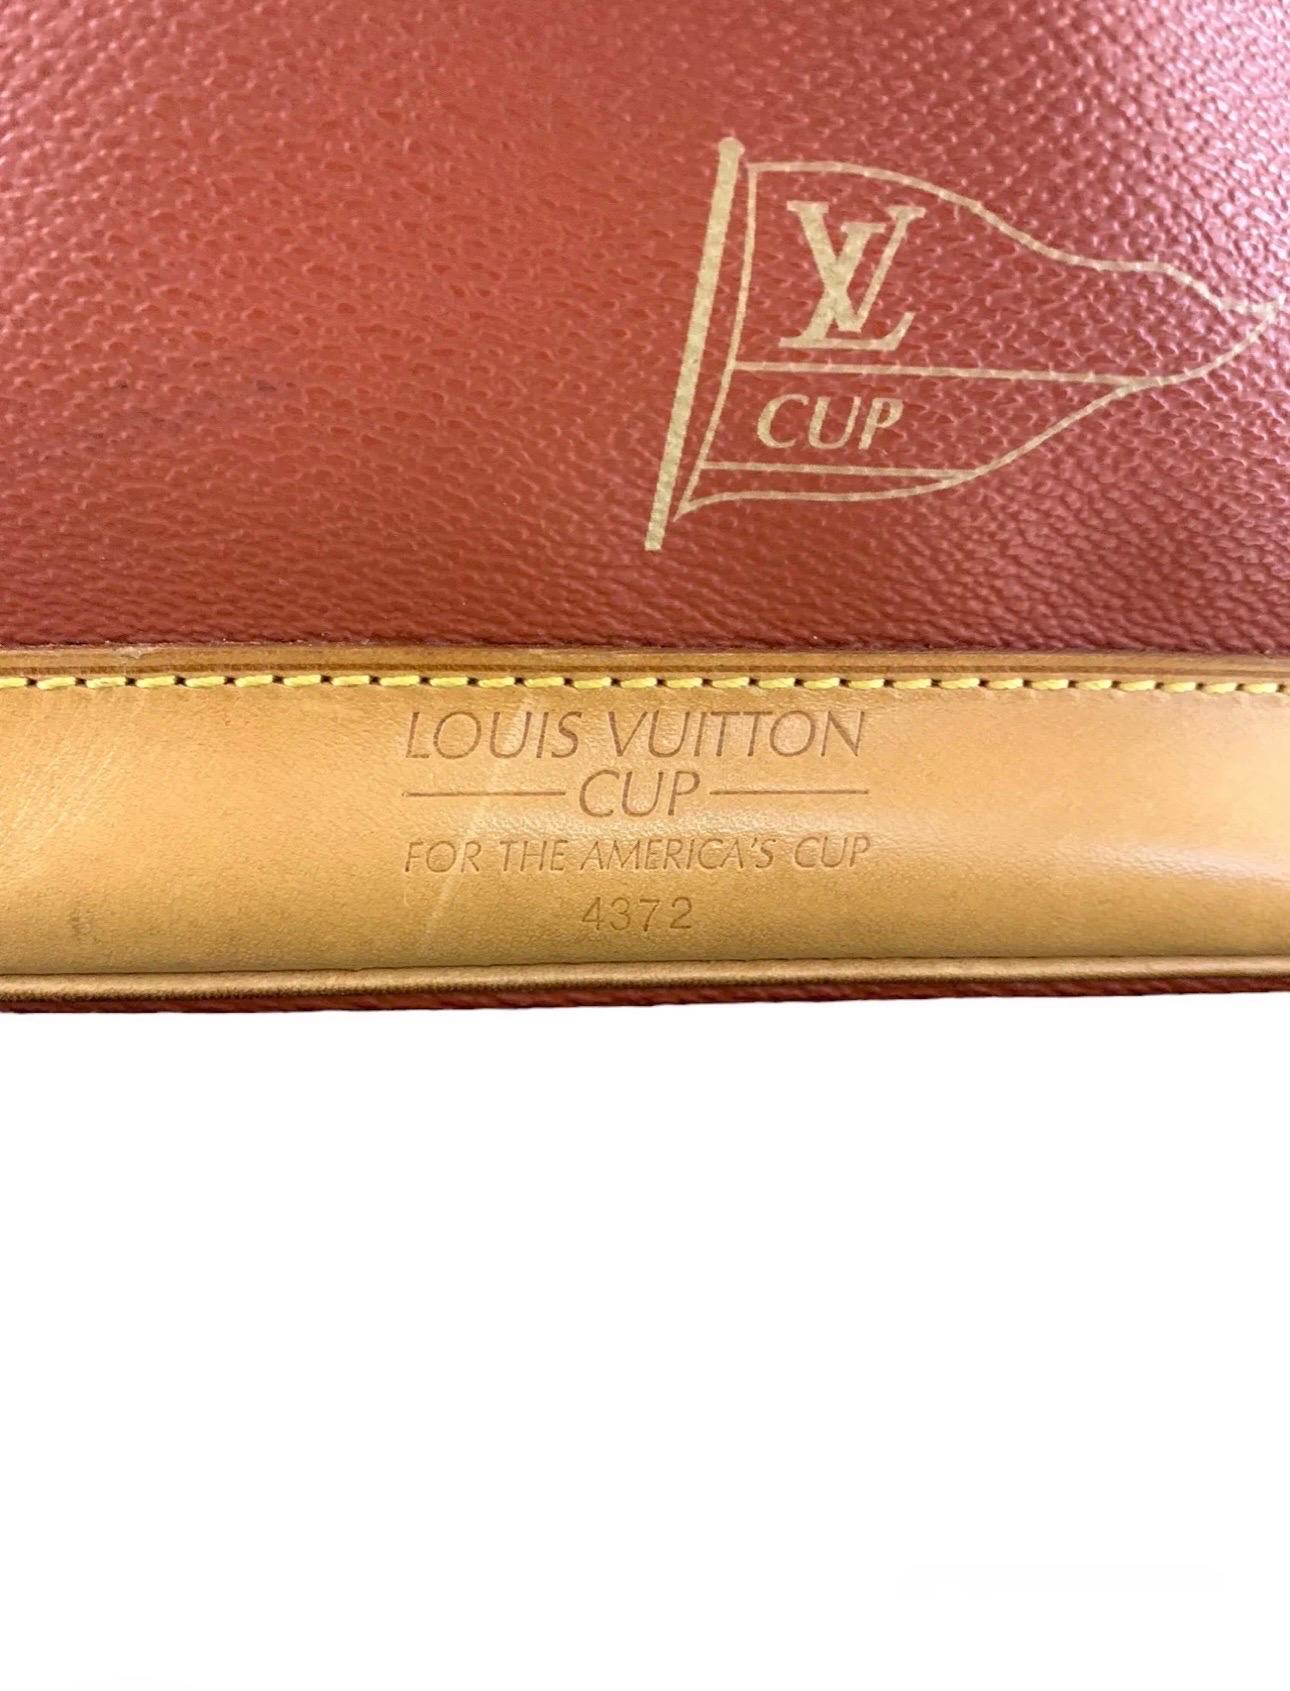 Louis Vuitton Tracolla American’s Cup L.E. For Sale 3